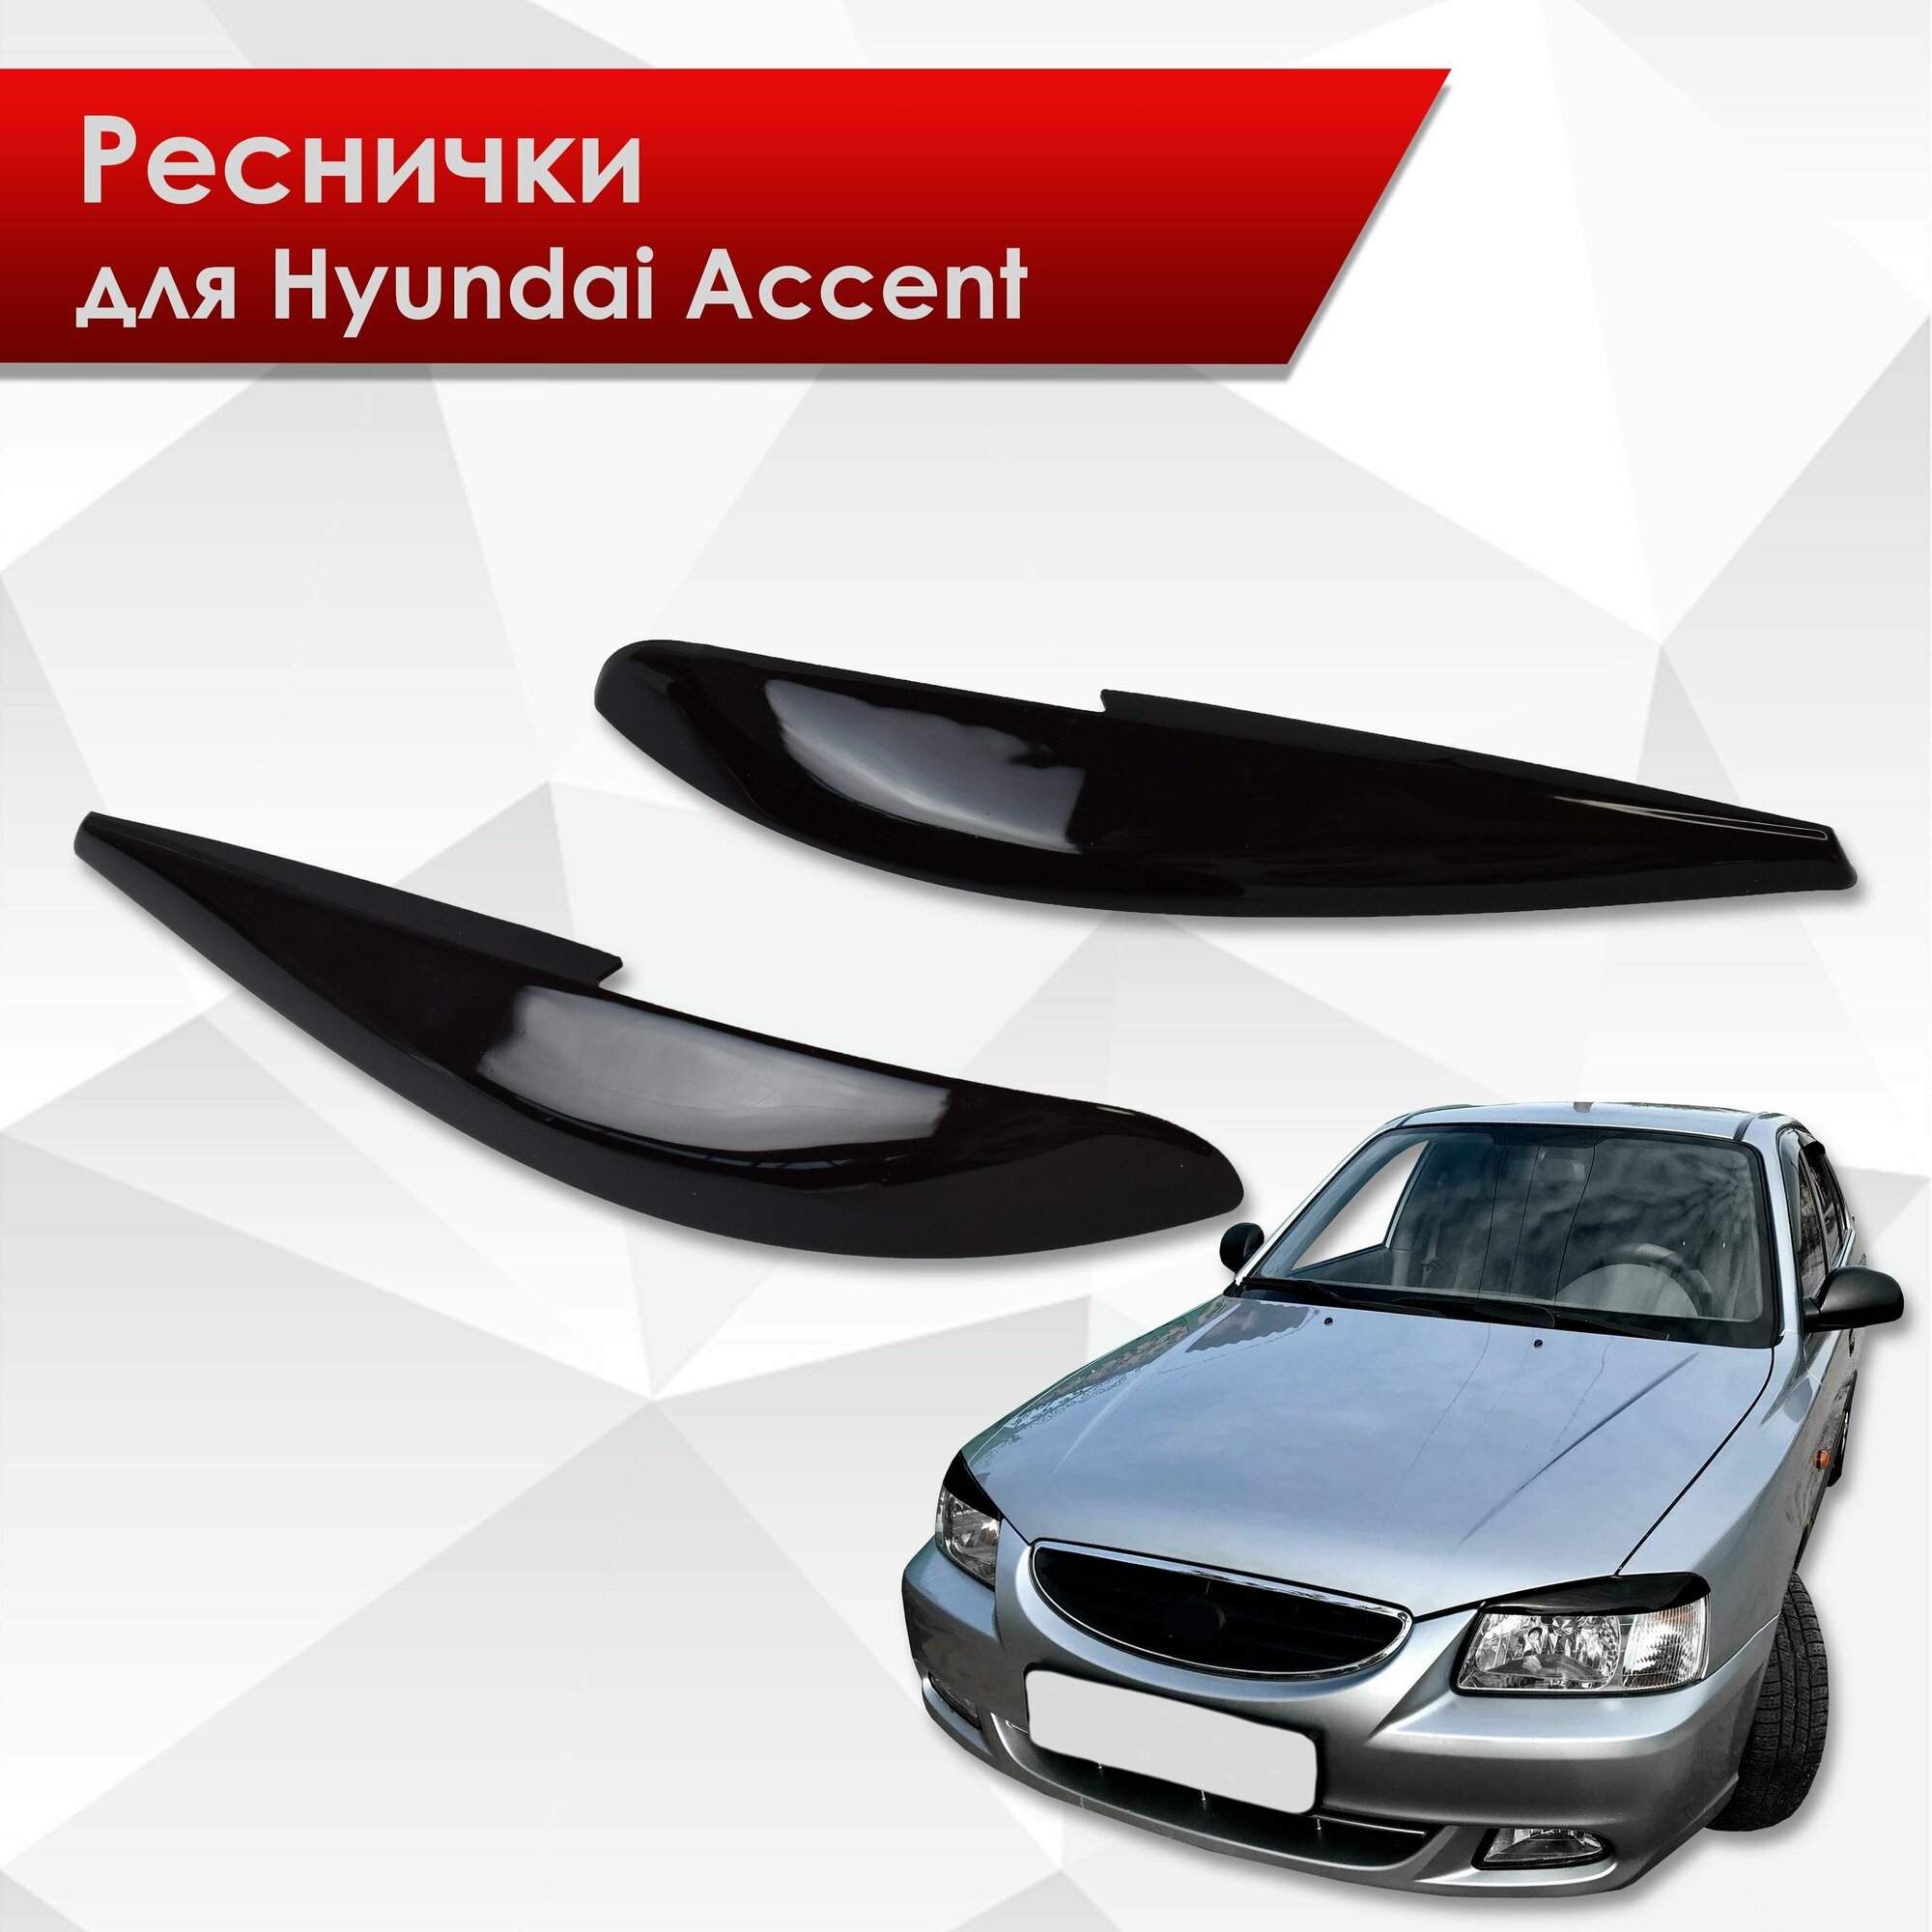 Накладки на фары / Реснички для Hyundai Accent / Хюндай Акцент 2000-2012 Г. В.